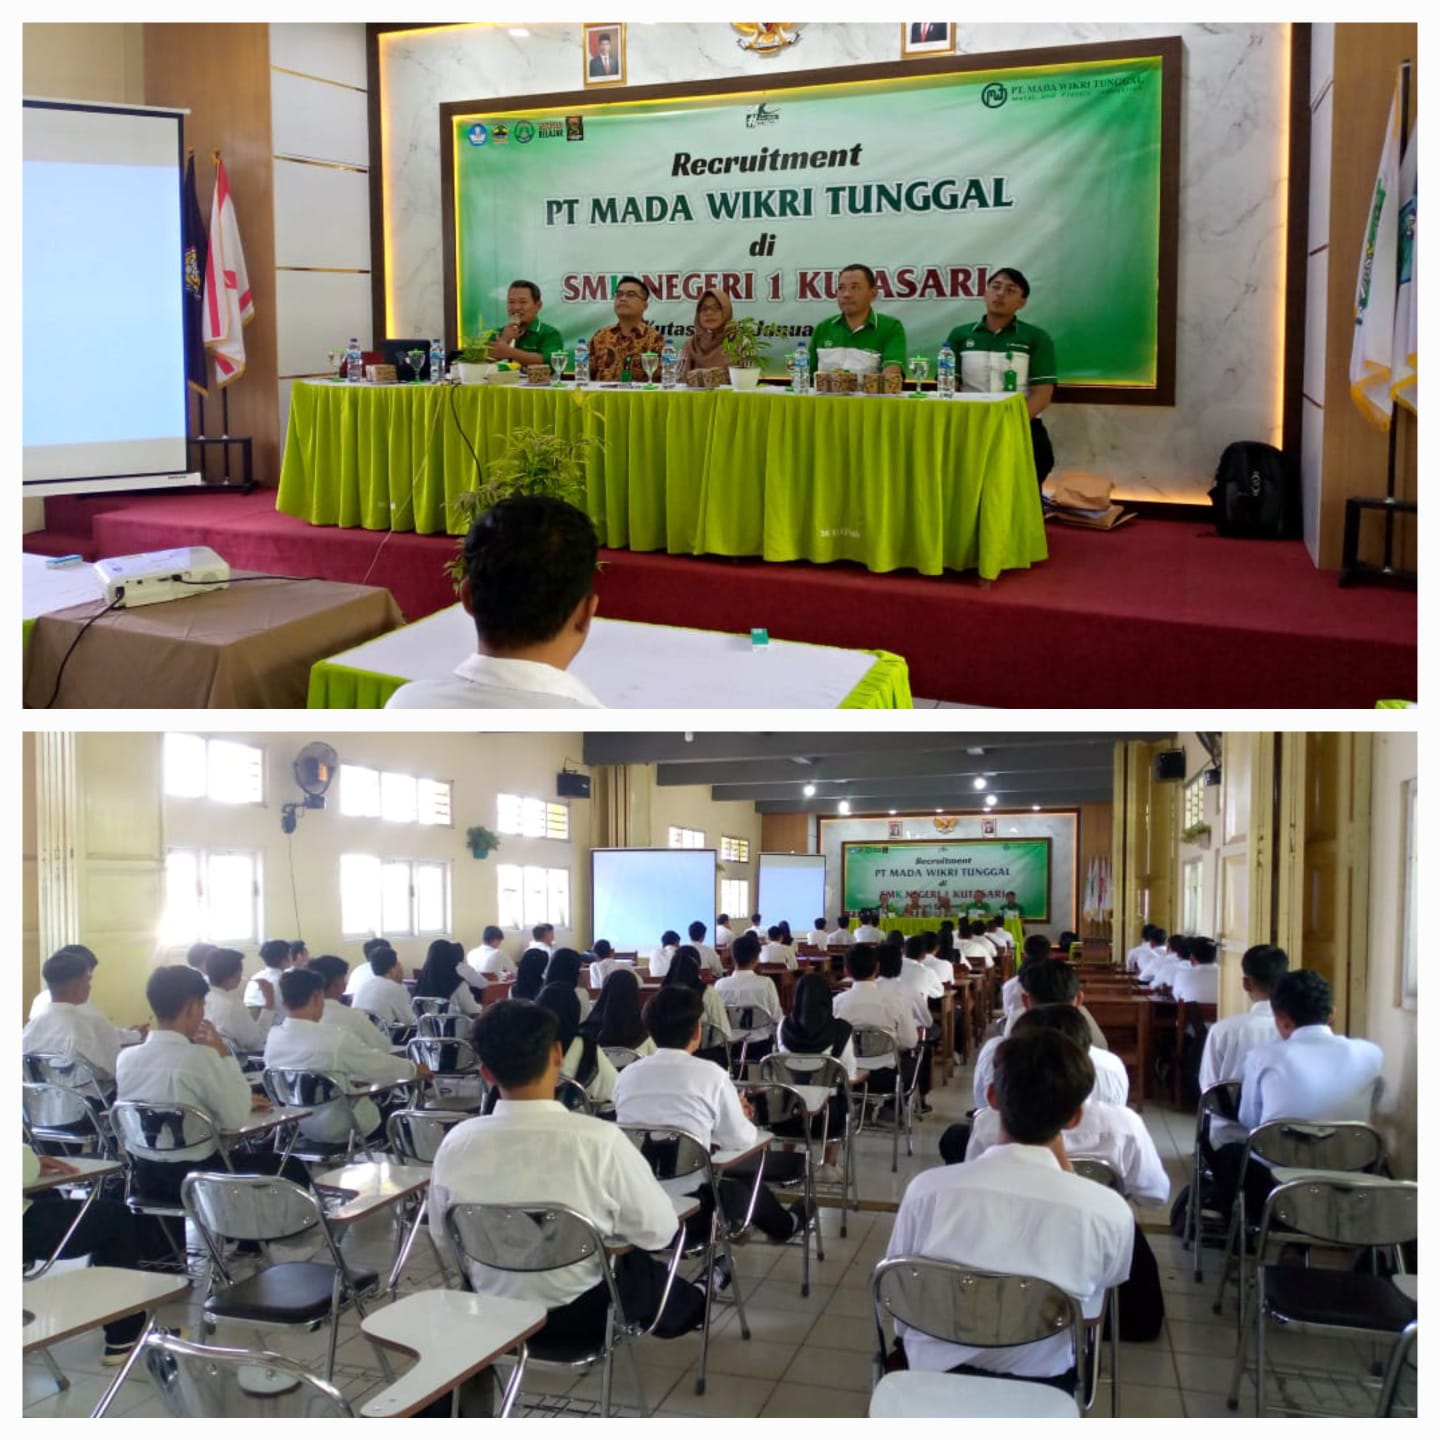 Rekrutmen Tenaga Kerja di SMK Negeri 1 Kutasari: Peluang Emas untuk Karir di PT Mada Wikri Tunggal